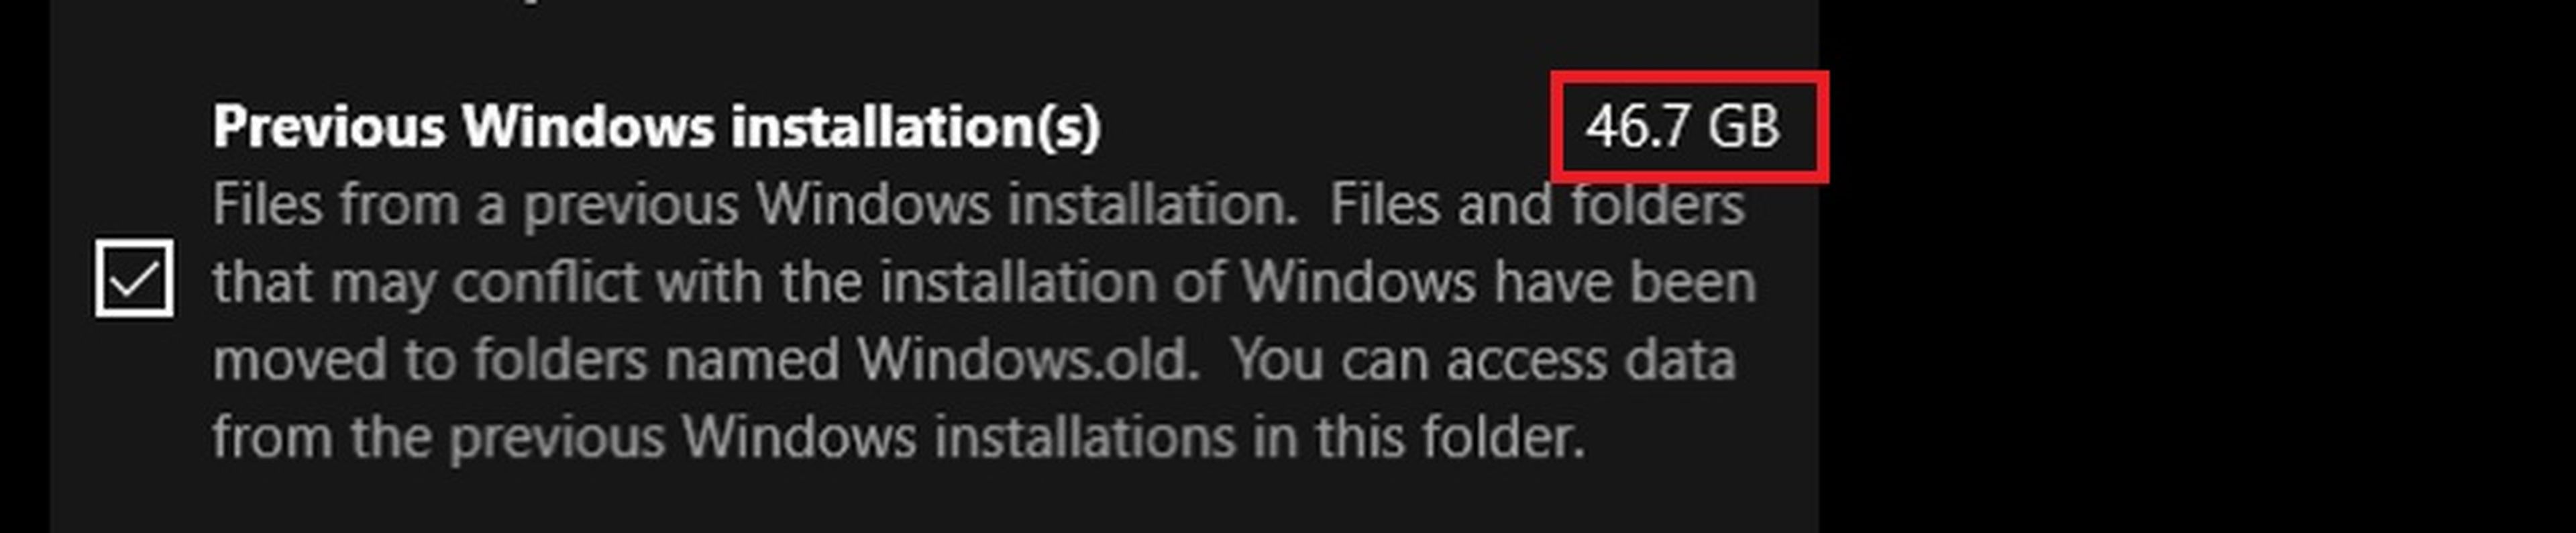 Cómo recuperar 40 GB tras instalar Windows 10 April 2018 Update